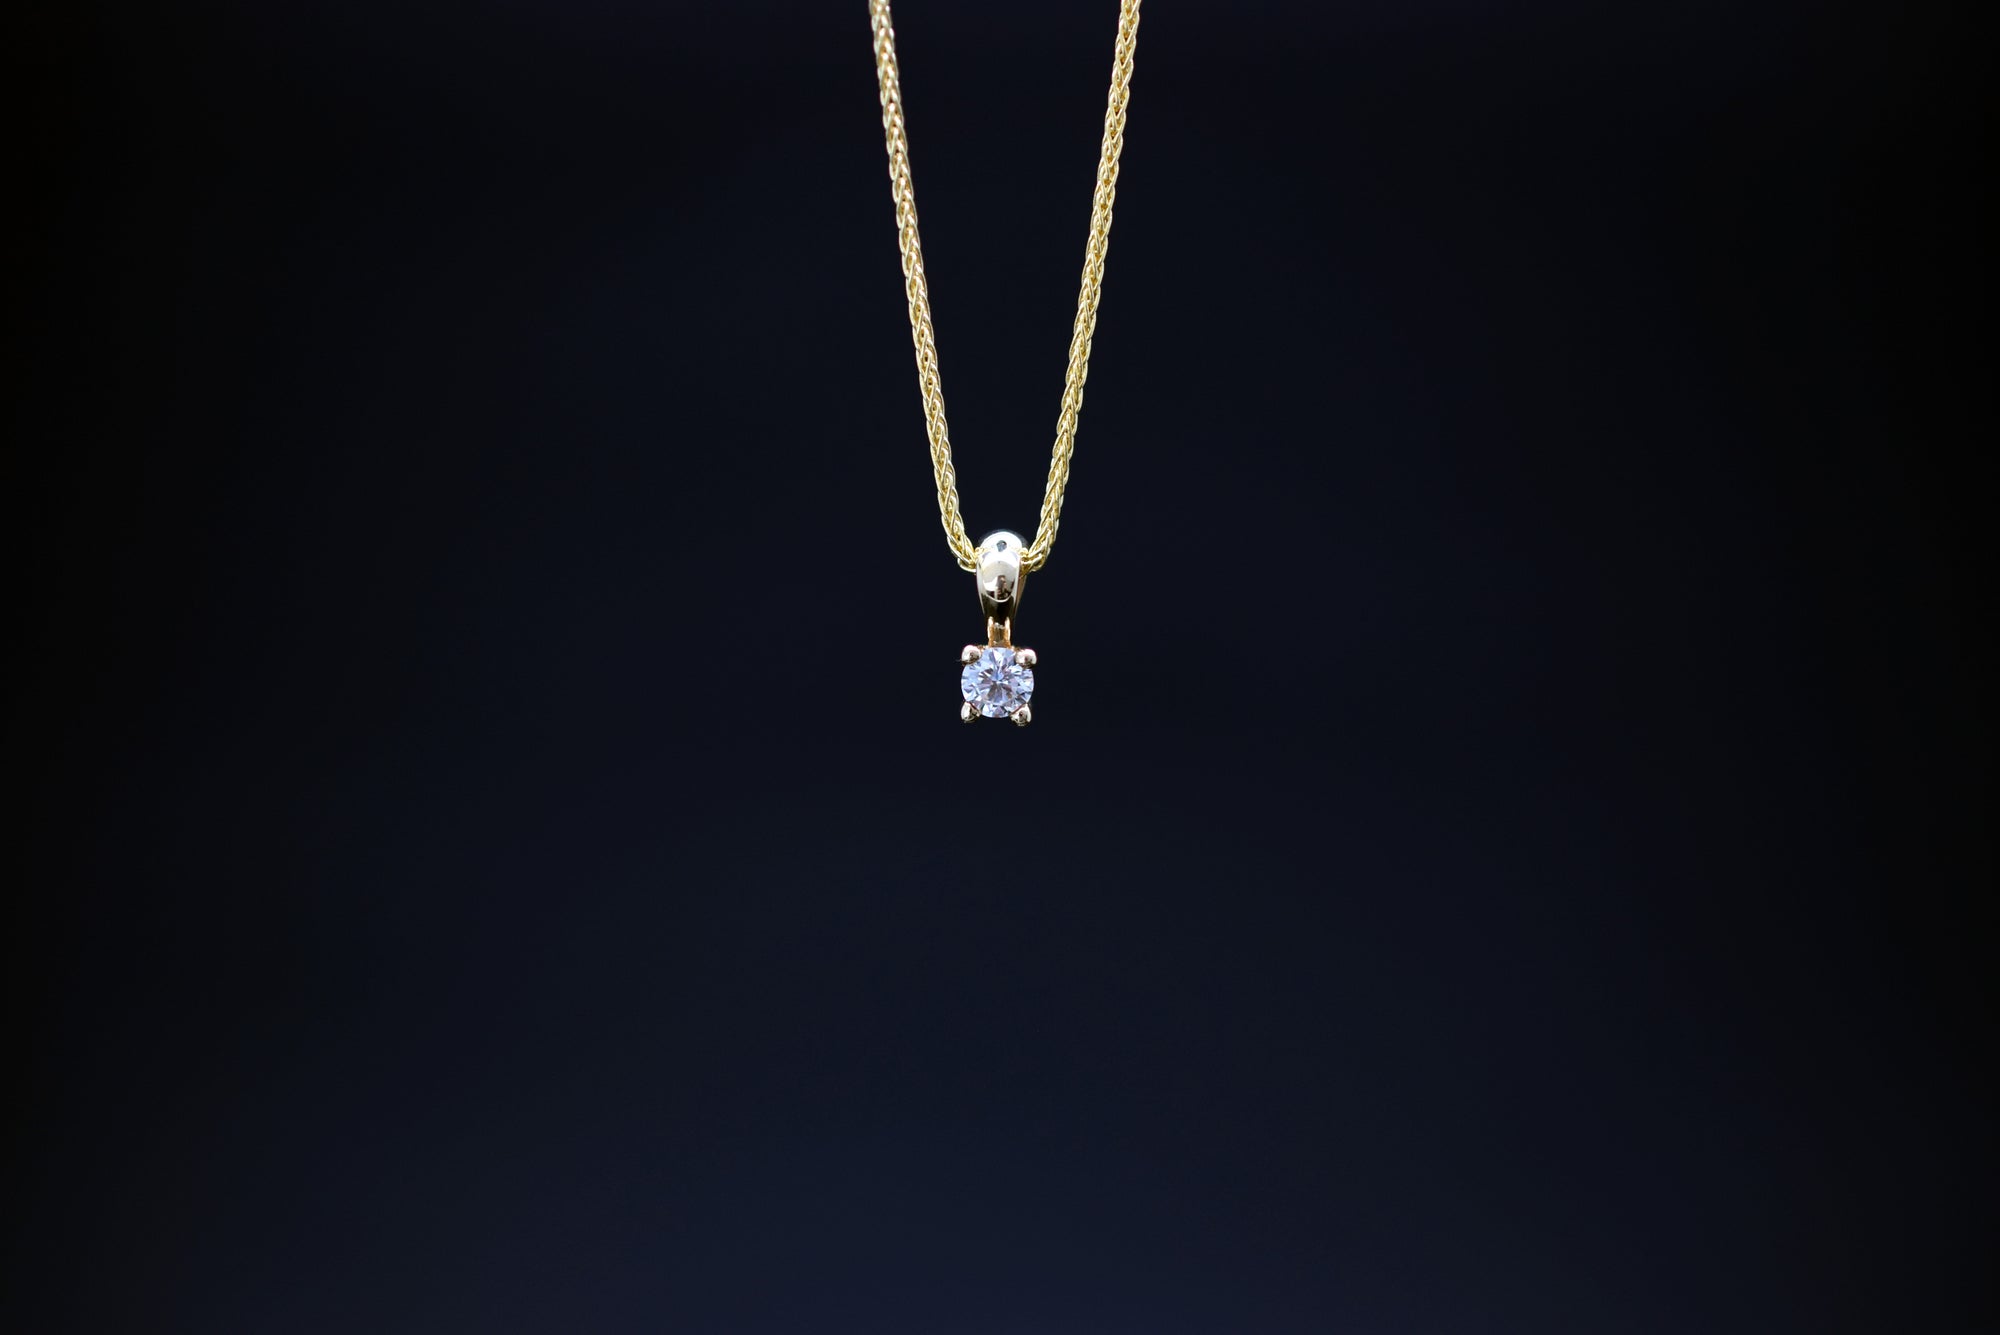 Halskette mit Diamantanhänger - 585er Gelbgold - ca. 0.09 ct.